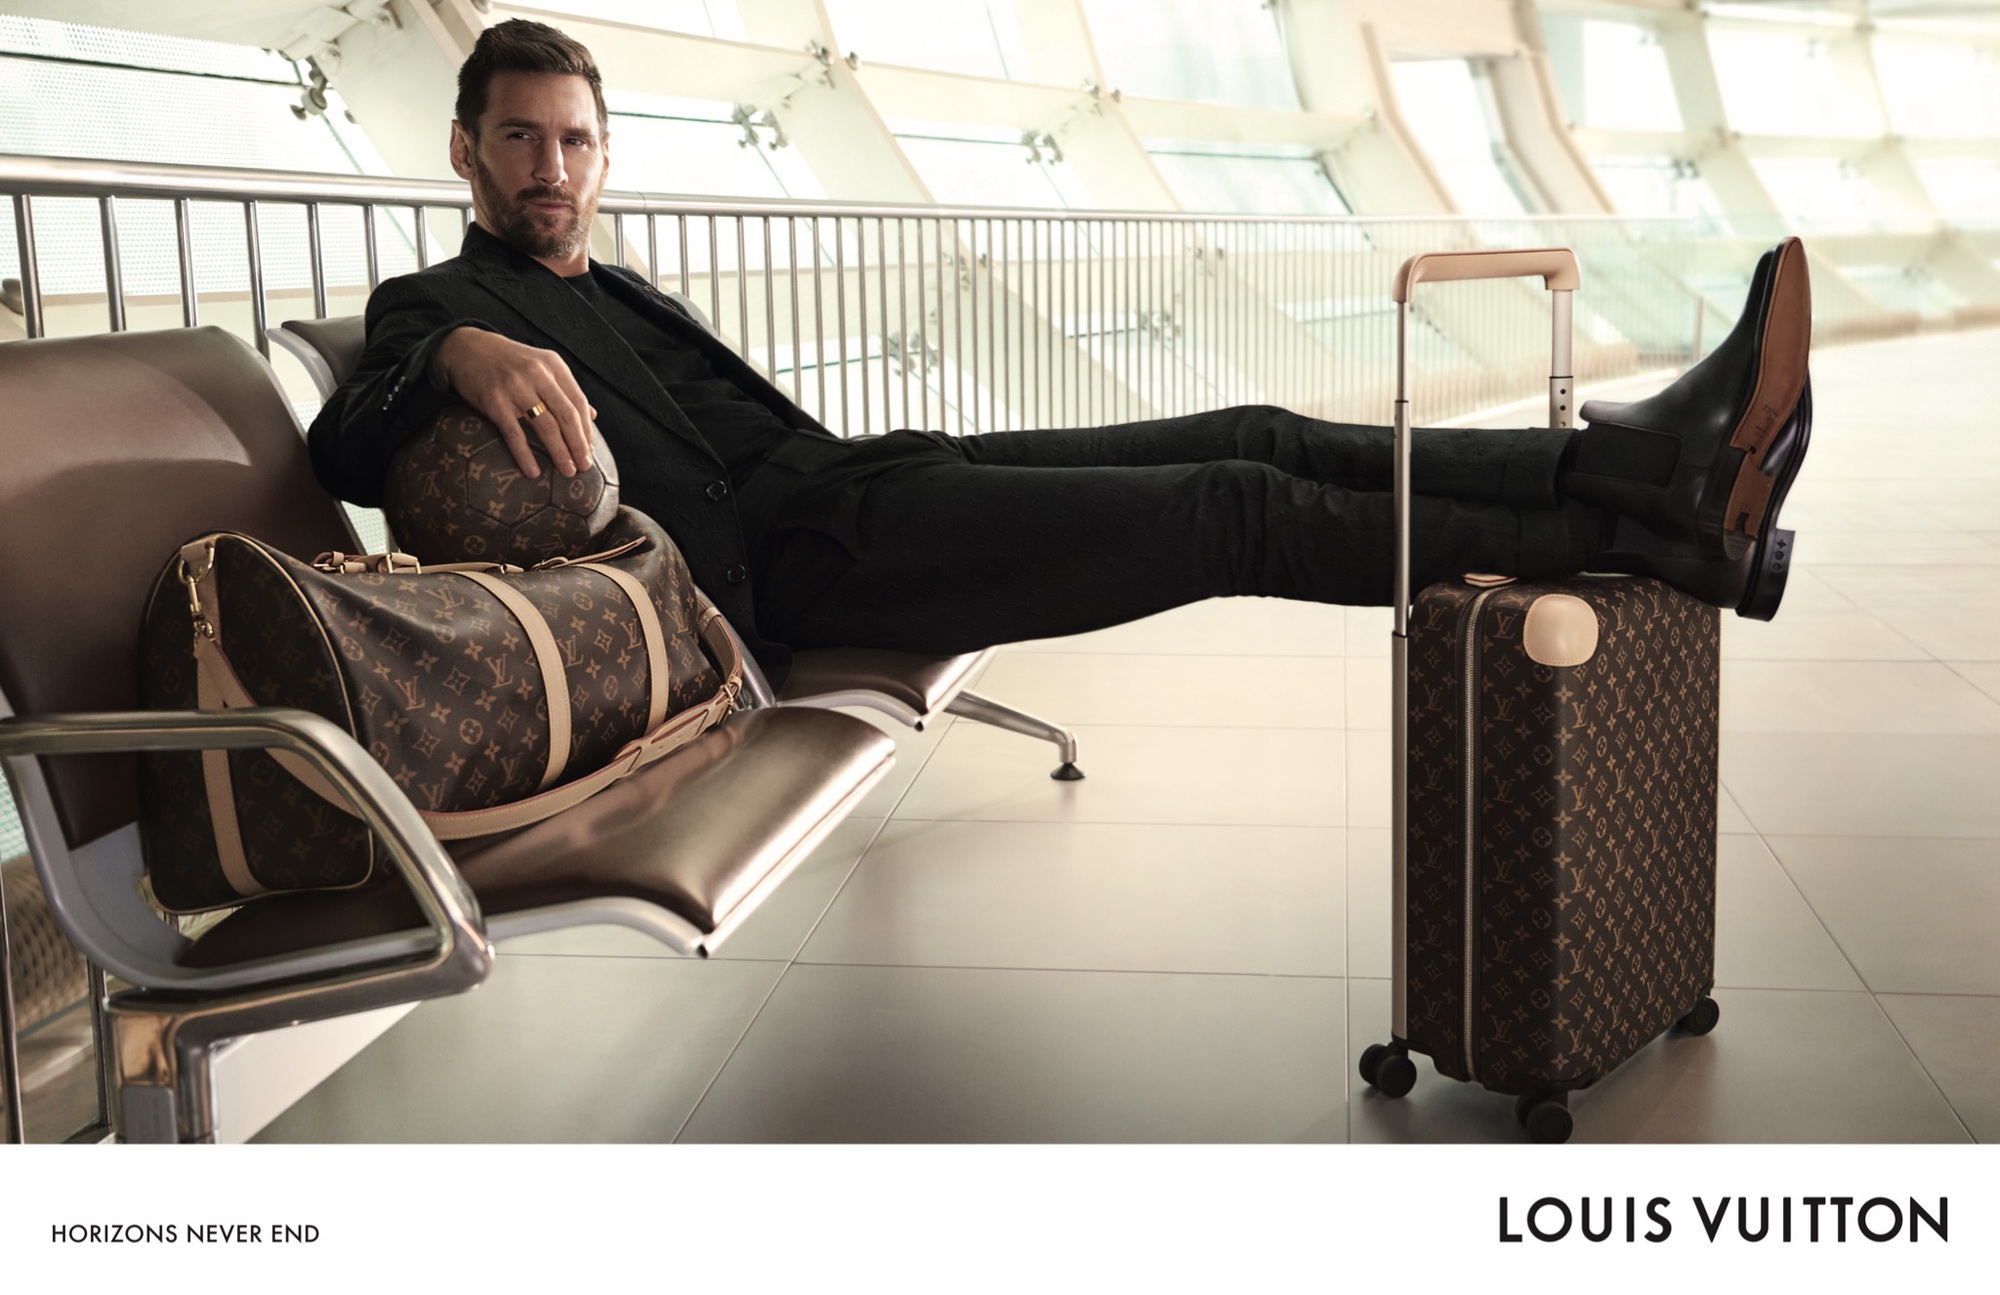 Lionel Messi khuấy động mùa du lịch trong chiến dịch “Horizon Never Ends” của Louis Vuitton - Ảnh 1.